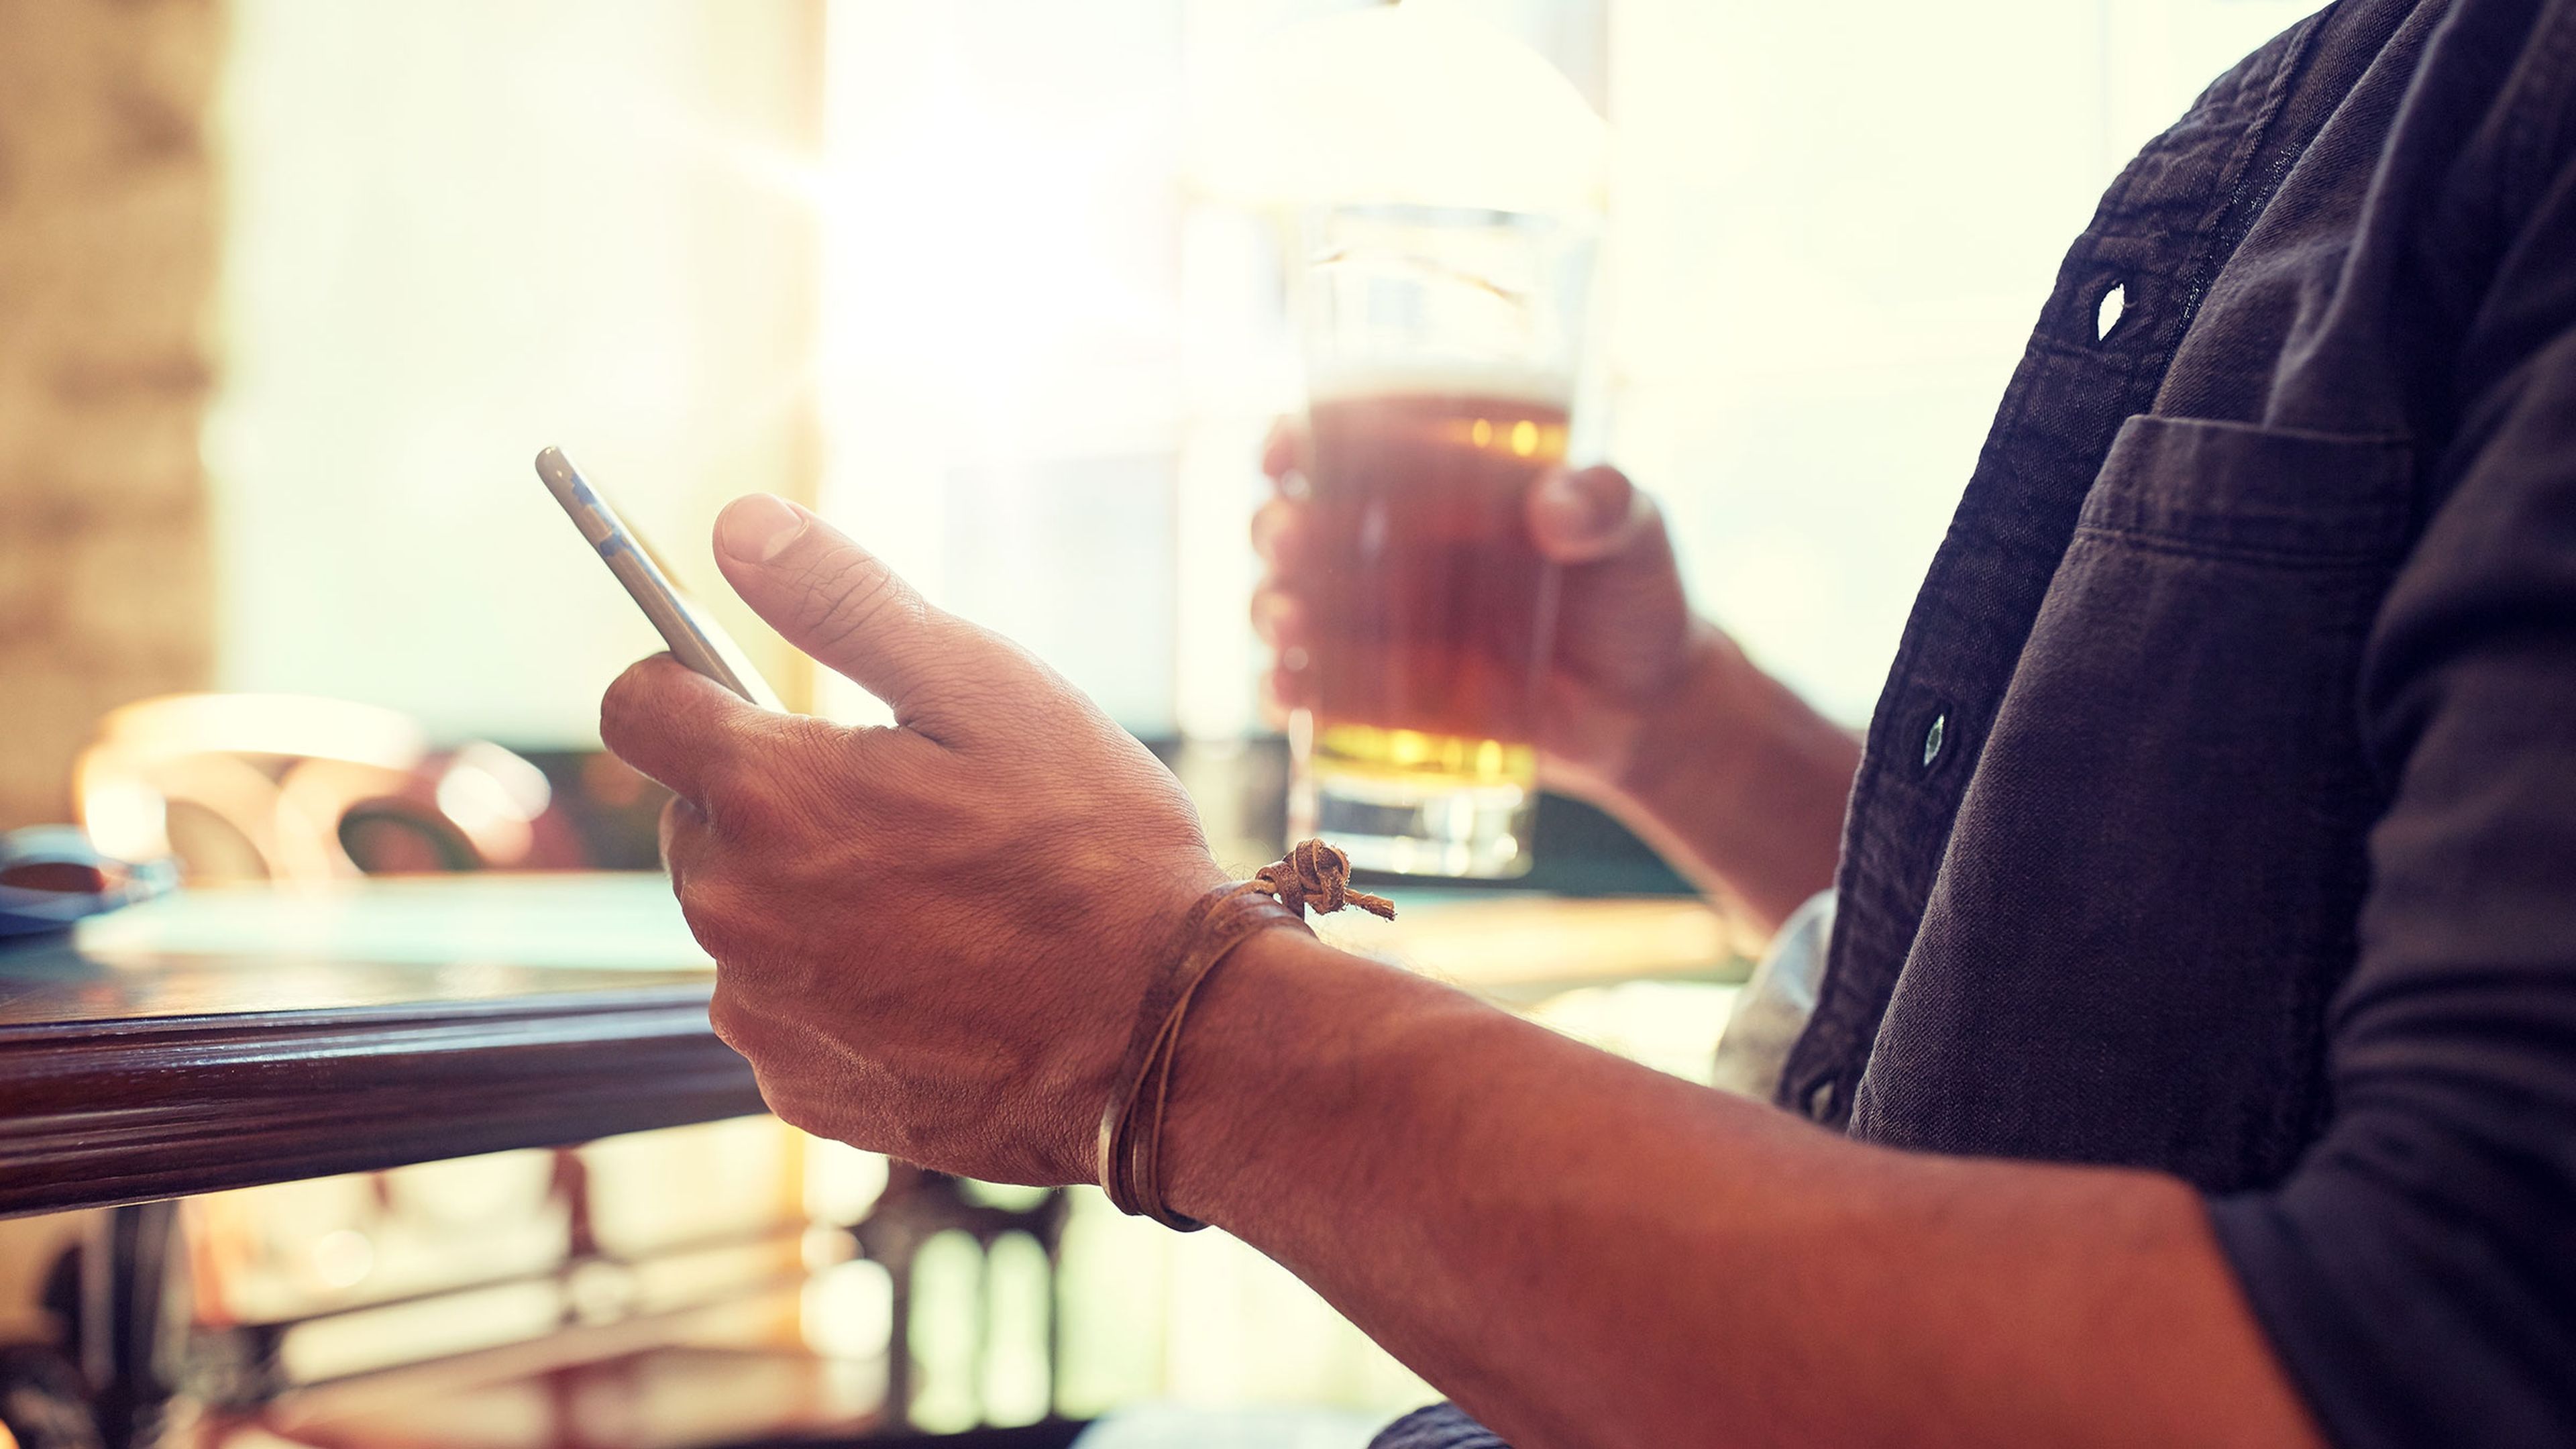 Persona usando un móvil y bebiendo cerveza